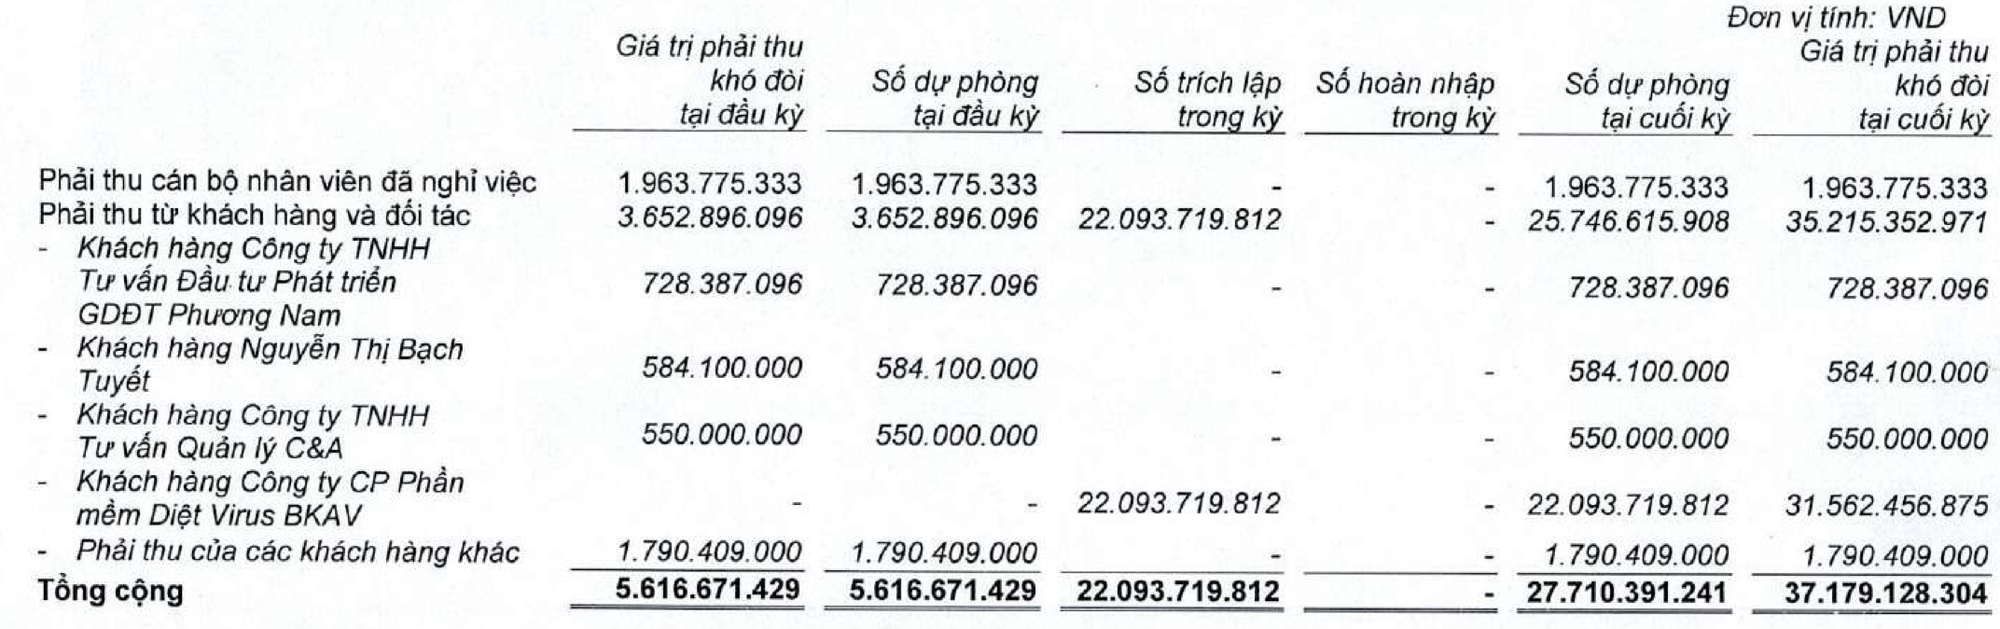 VNDirect bất ngờ phát sinh khoản phải thu khó đòi hàng chục tỷ đối với Bkav Pro của ông Nguyễn Tử Quảng - Ảnh 2.